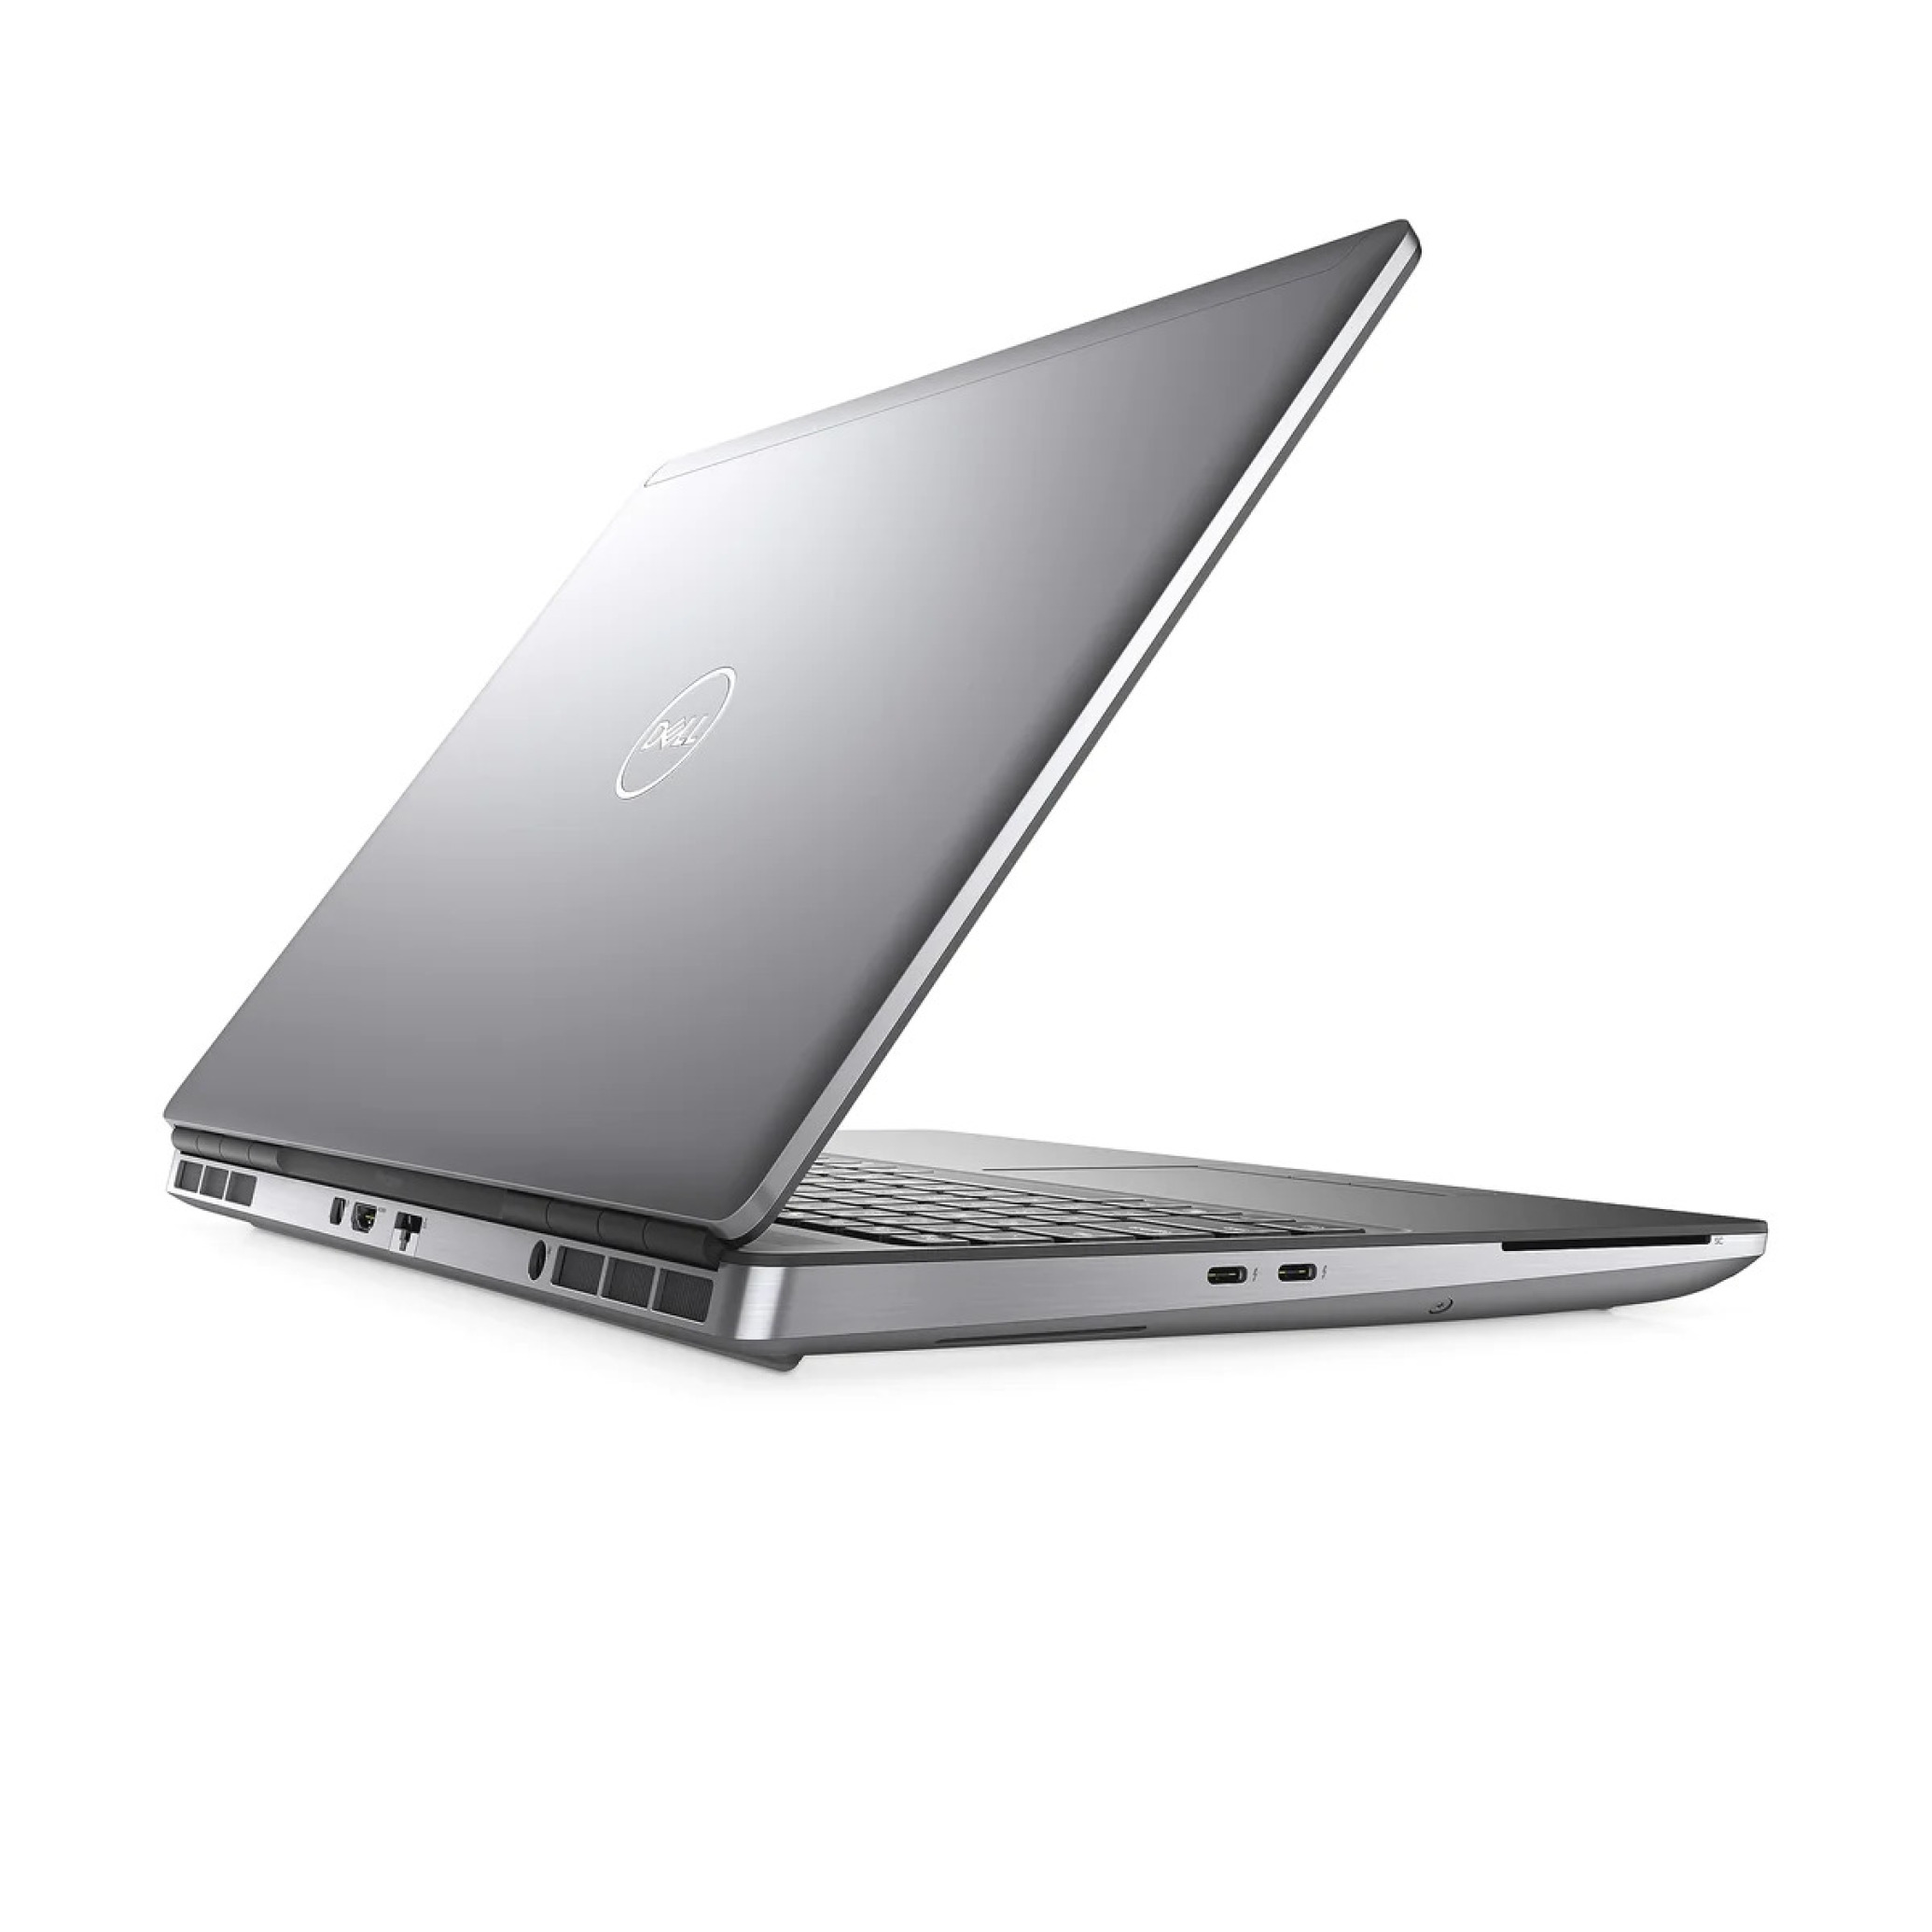  خرید و قیمت لپ تاپ Dell Precision 7550 - Xeon W-10855M - T2000 4GB | لاکچری لپ تاپ 